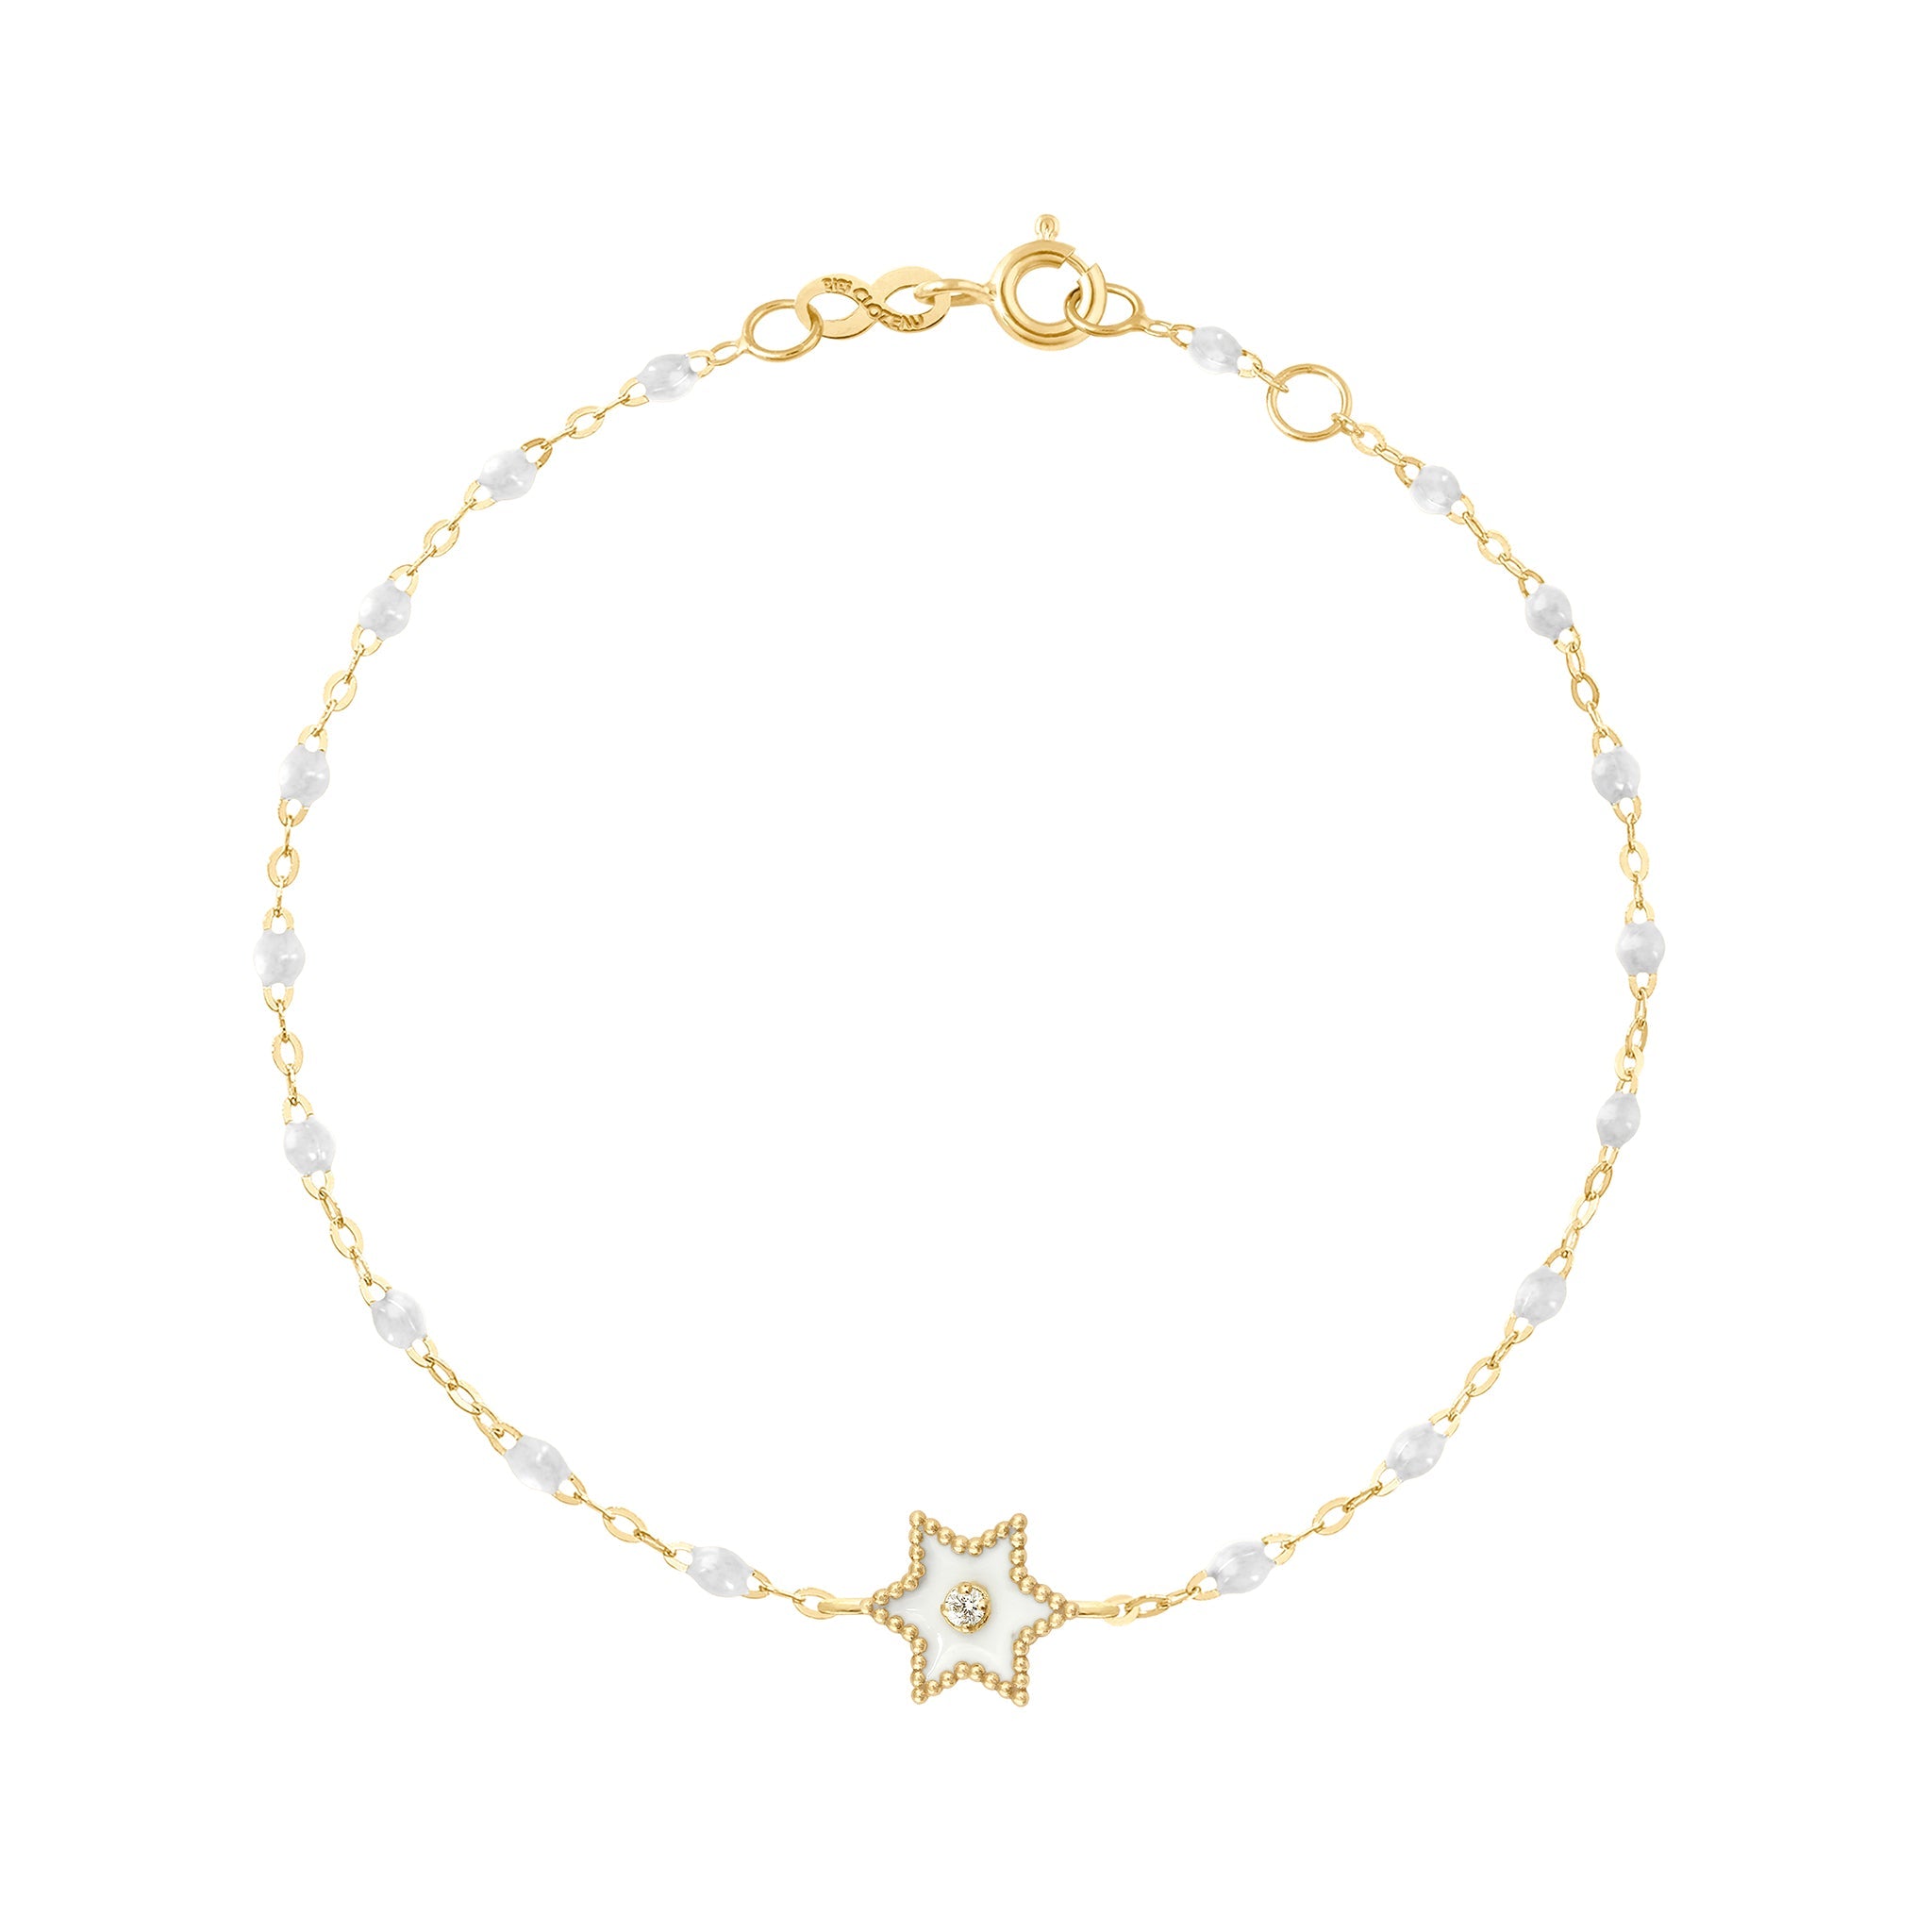 Bracelet Etoile Star résine blanche, diamant, or jaune, 17 cm pirate Référence :  b3st001j0117di -1